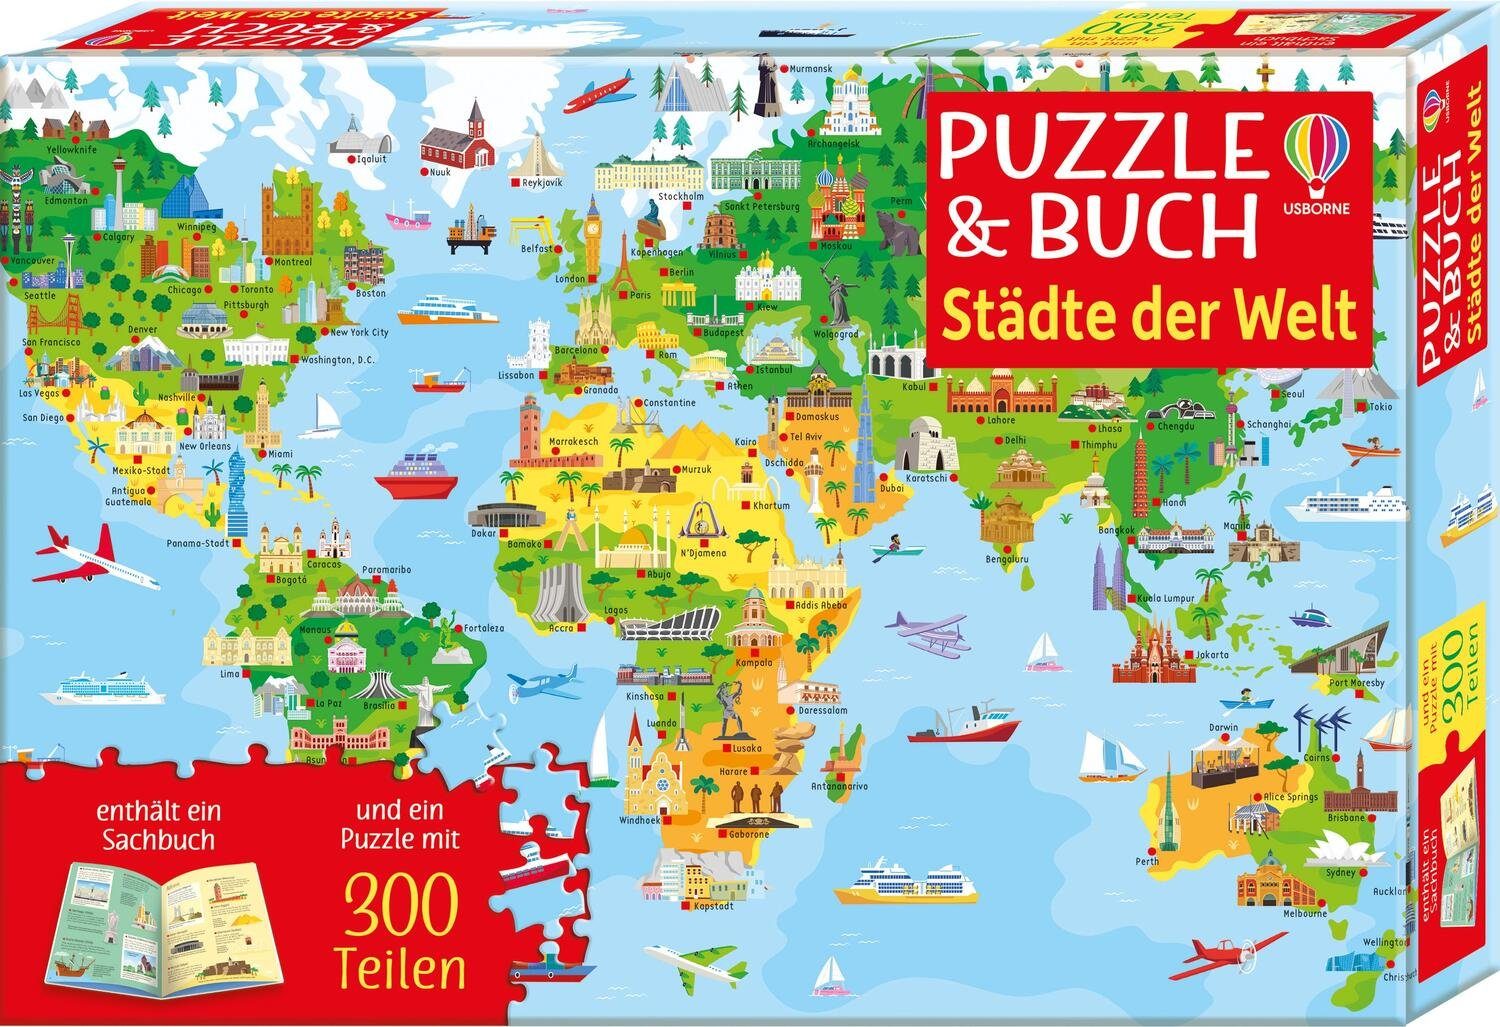 Usborne Verlag Puzzle Puzzle Buch: & 200 Puzzleteile Welt, Städte der